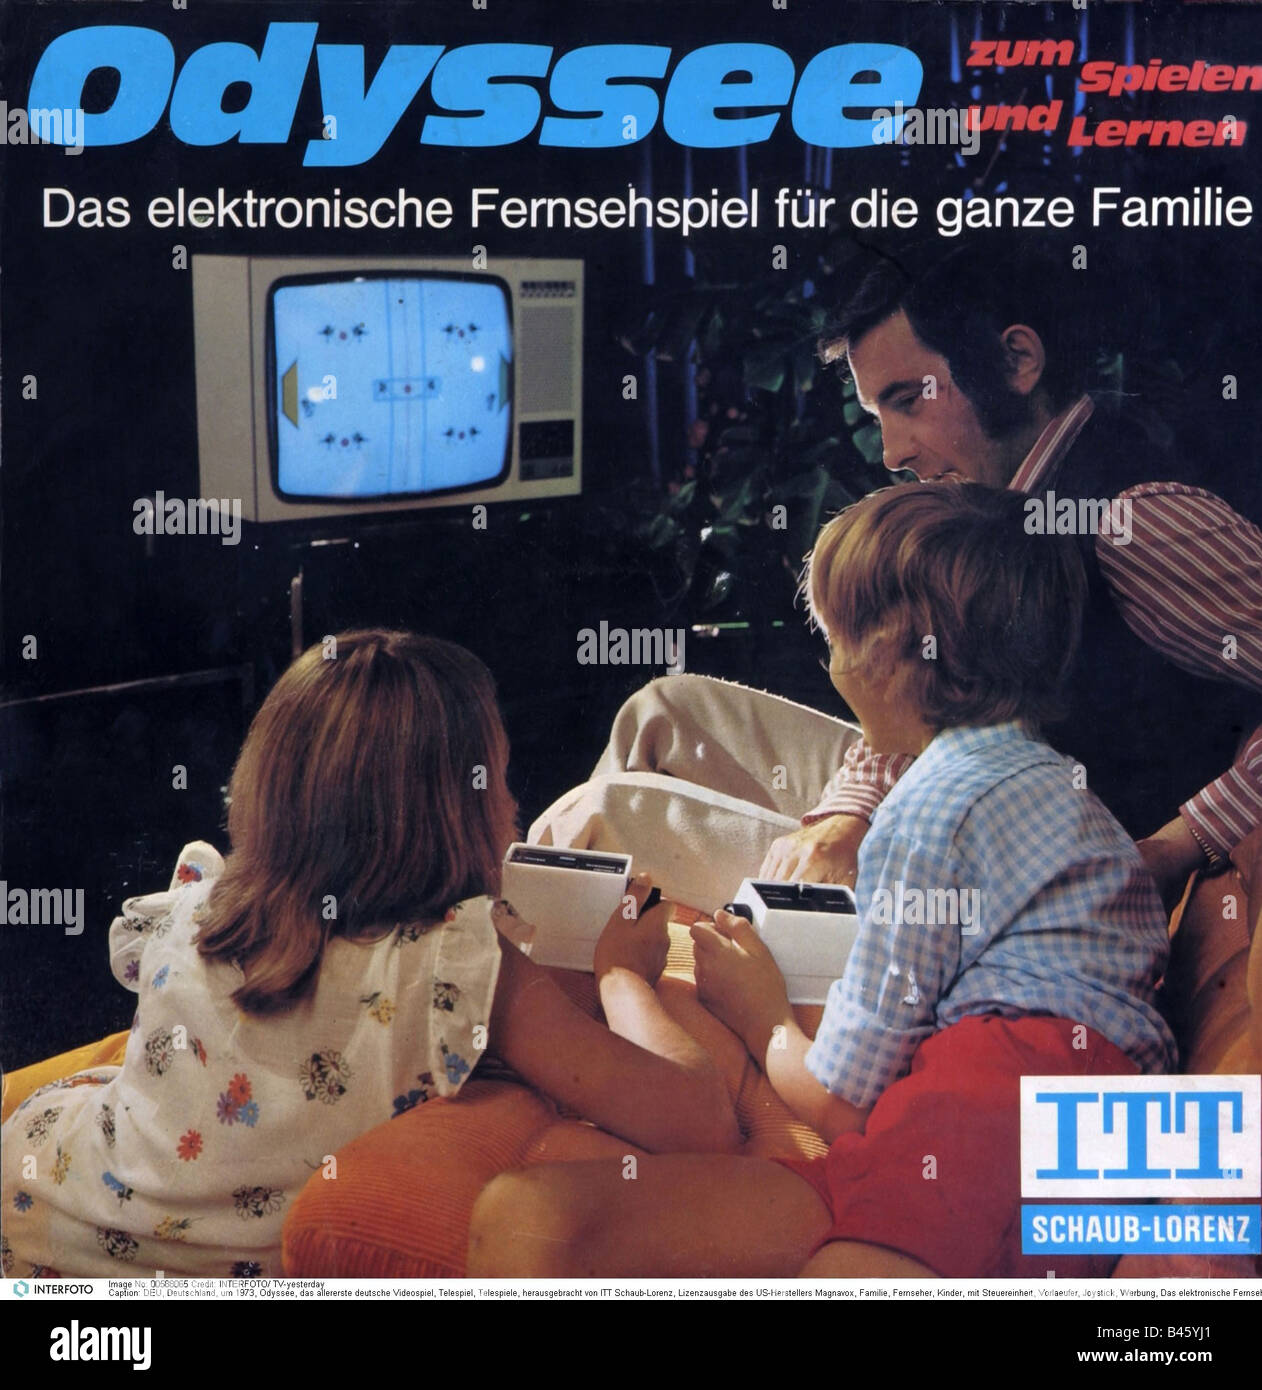 Computing / Elektronik, Menschen und Elektronik, erstes Videospiel von ITT Schaub-Lorenz, Lizenz des US-Produzenten Magnavox, Deutschland, ca. 1973, Stockfoto